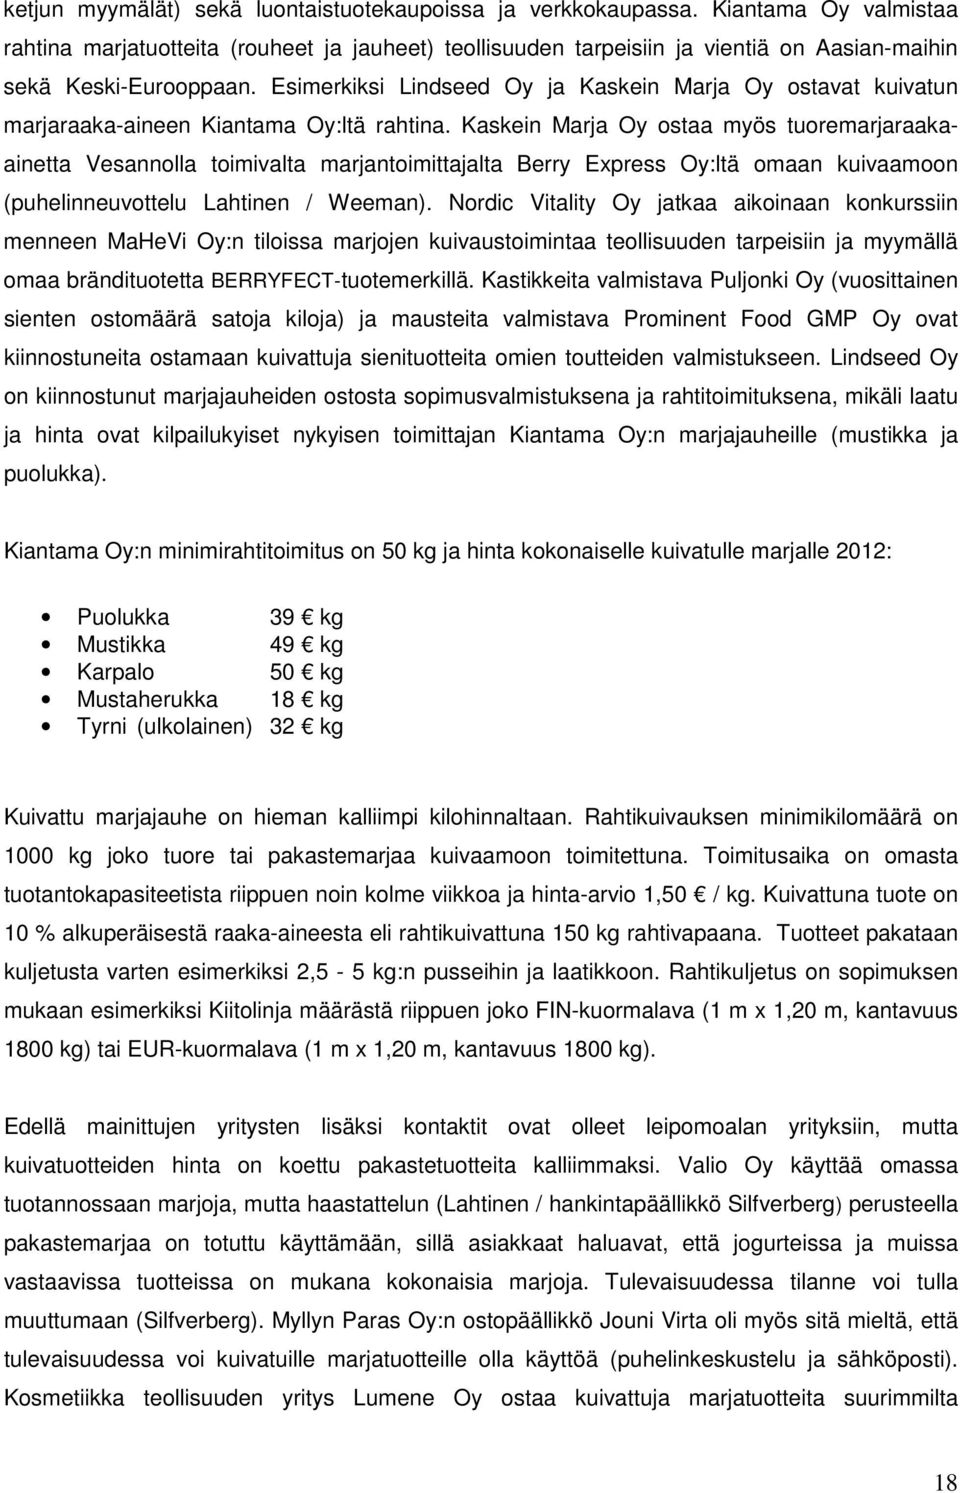 Esimerkiksi Lindseed Oy ja Kaskein Marja Oy ostavat kuivatun marjaraaka-aineen Kiantama Oy:ltä rahtina.